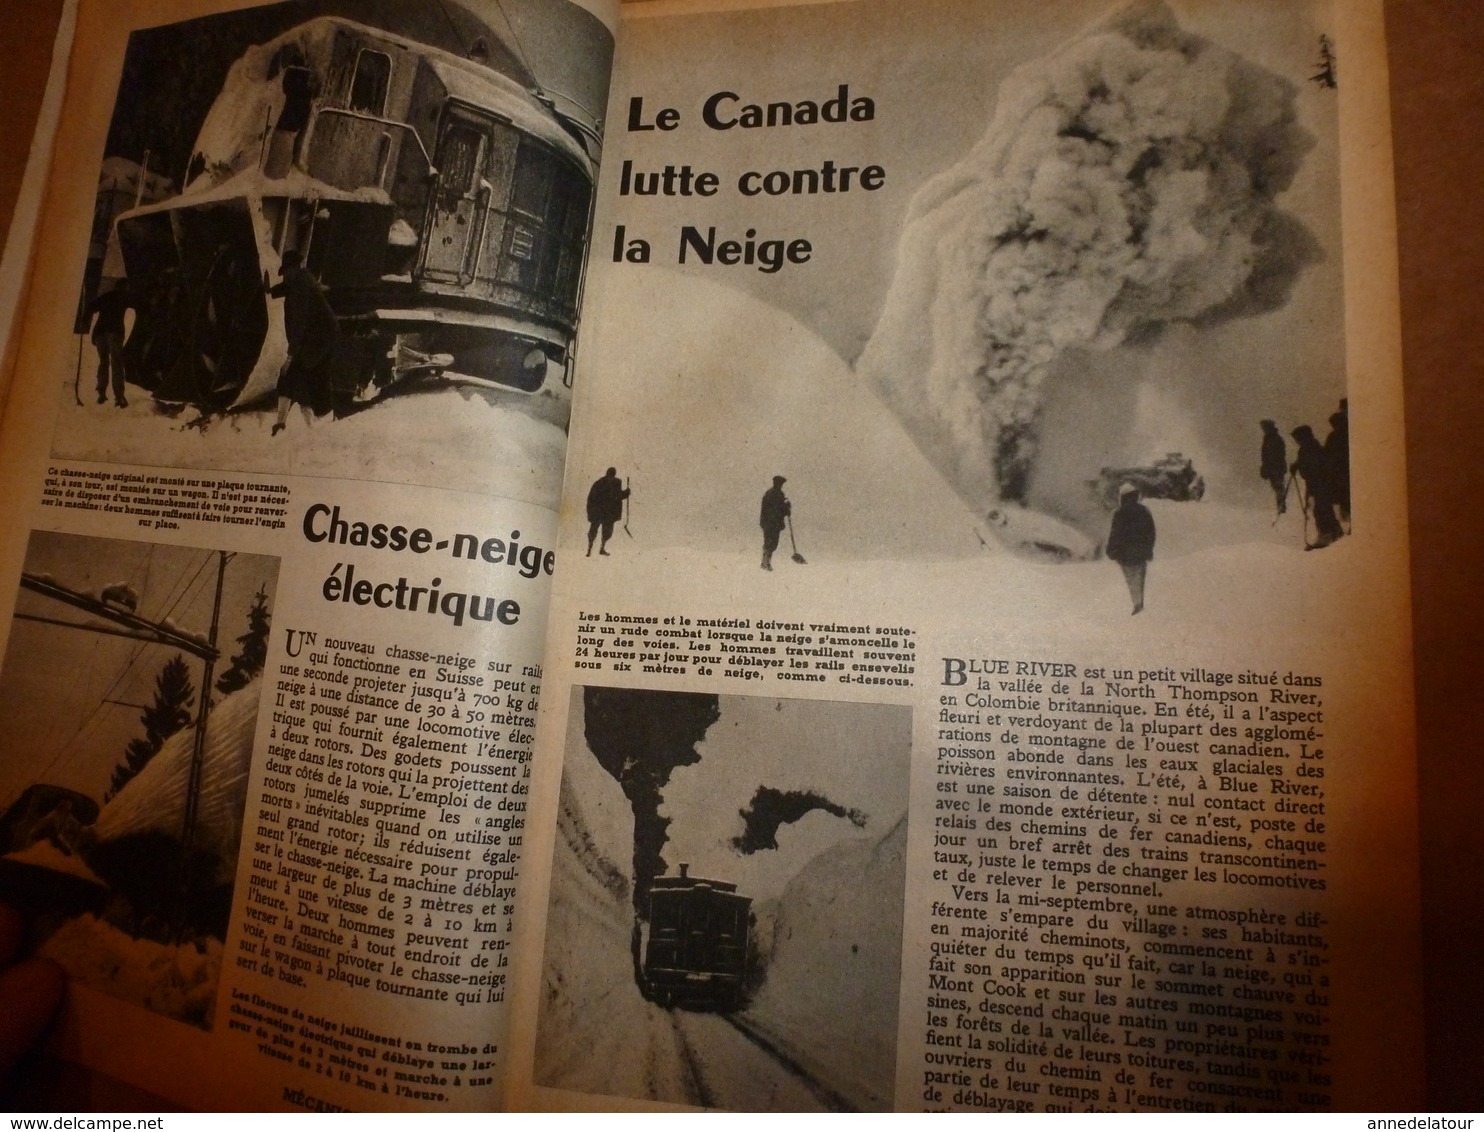 1952 MÉCANIQUE POPULAIRE:La taconite sera le fer de demain;Les couverts en bois;Le Canada lutte contre la neige; etc